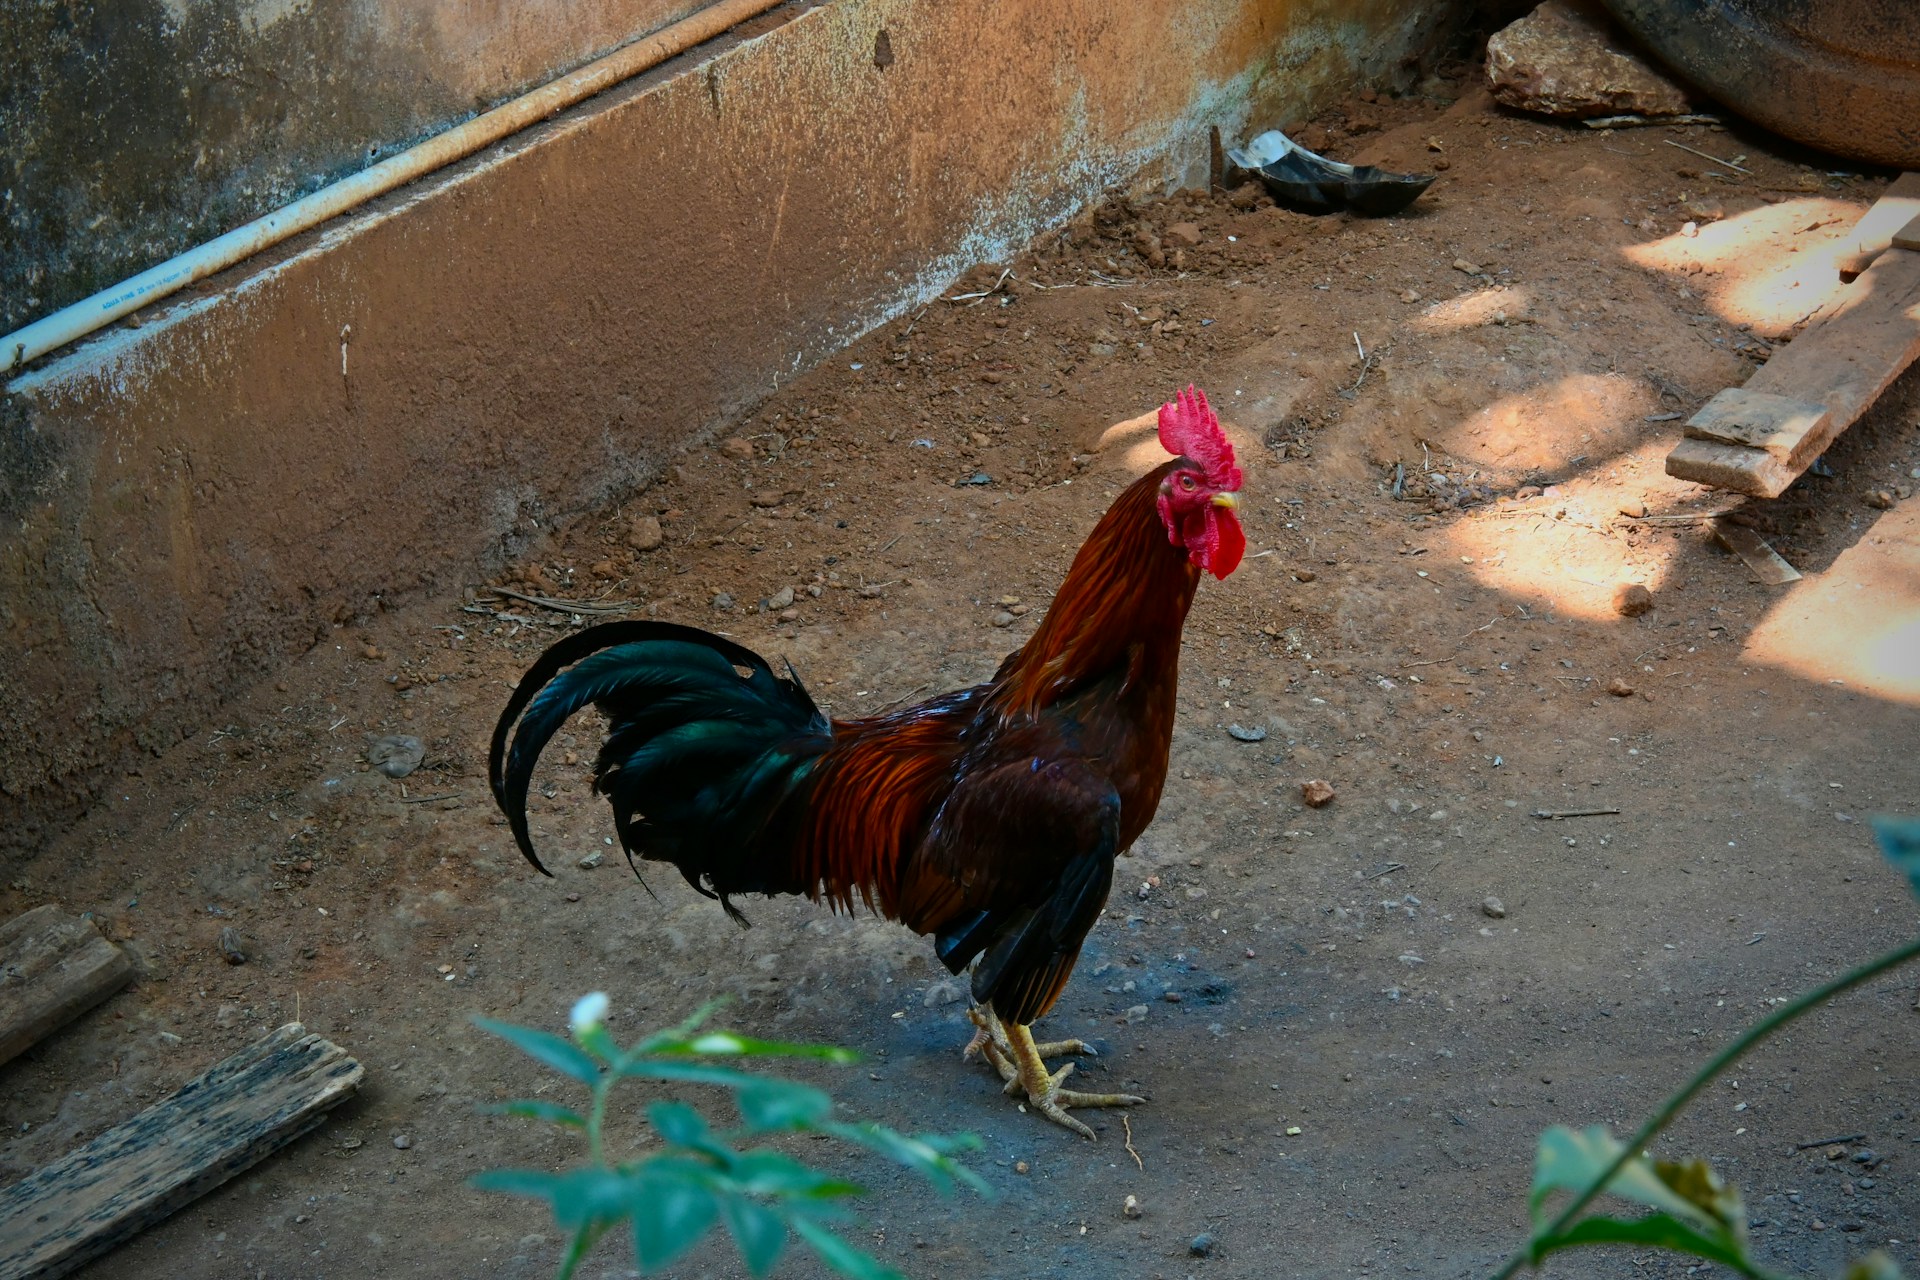 La gallina es un animal de corral. Fotografía en una granja de la india por Praswin Prakashan.